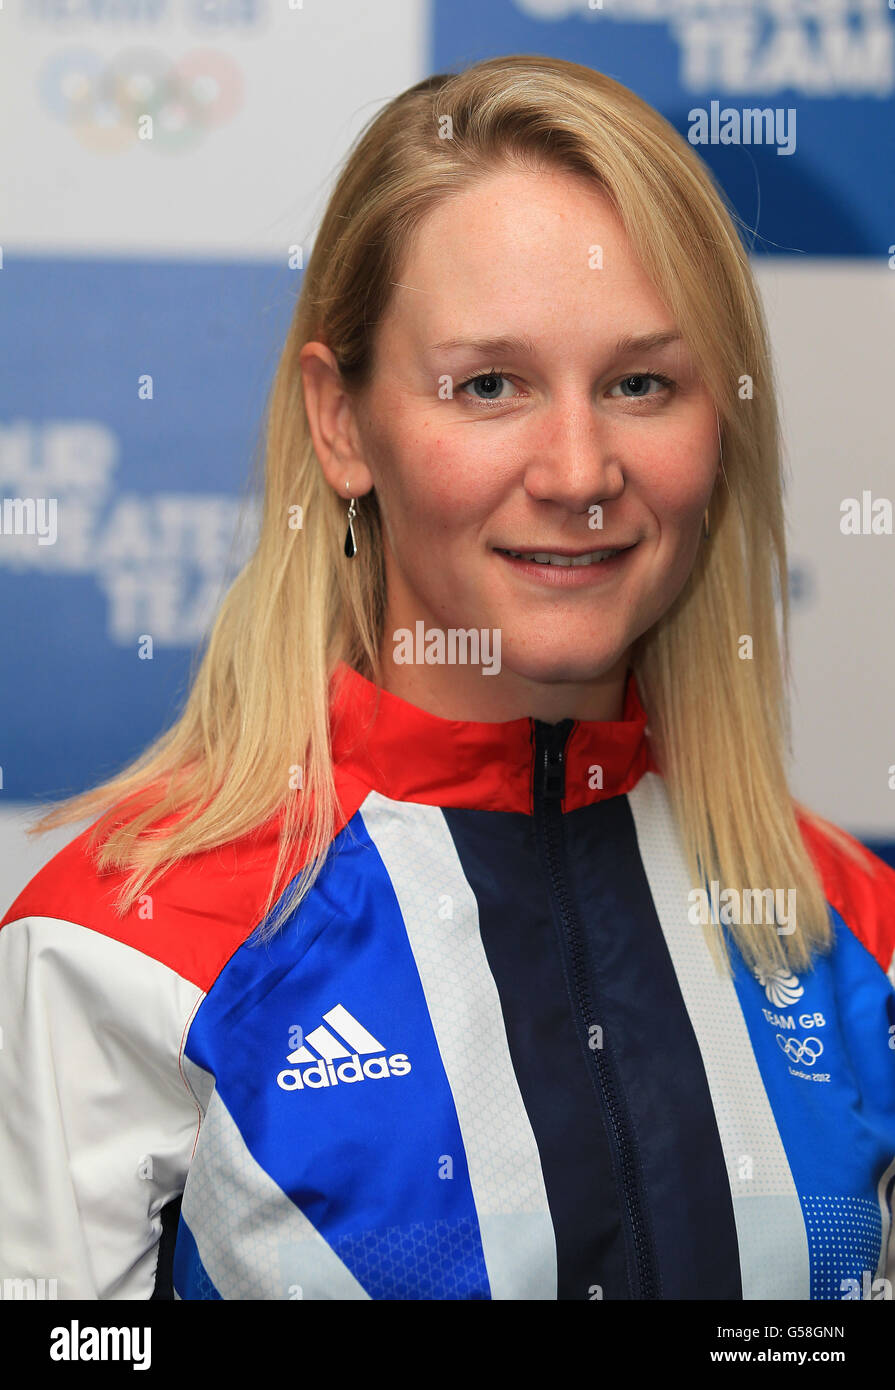 Jeux olympiques - Jeux olympiques de Londres 2012 - Team GB Kitting out - Rowing -Loughborough University.Katie Greves lors de la séance de mise en forme de Londres 2012 à l'Université Loughborough, Loughborough. Banque D'Images